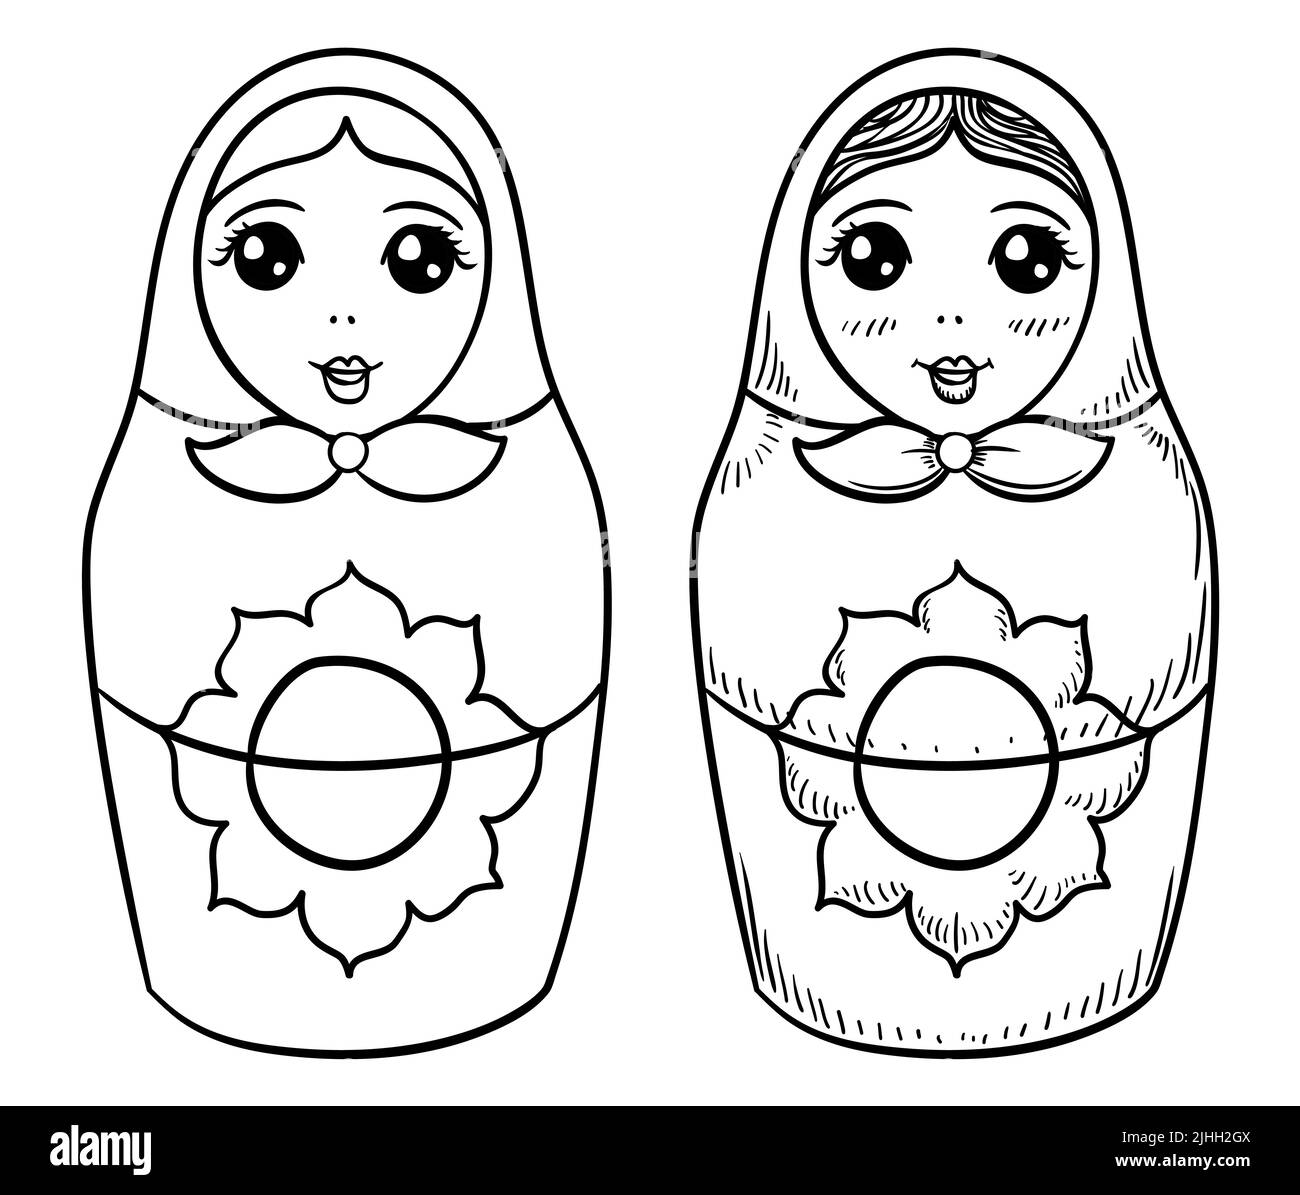 Niedliches Paar weibliche Matroschka-Puppen, mit Kapuze und Blumen mit unterschiedlichem Design: Eine in Umriss und die andere in Hand zeichnen Stil. Stock Vektor